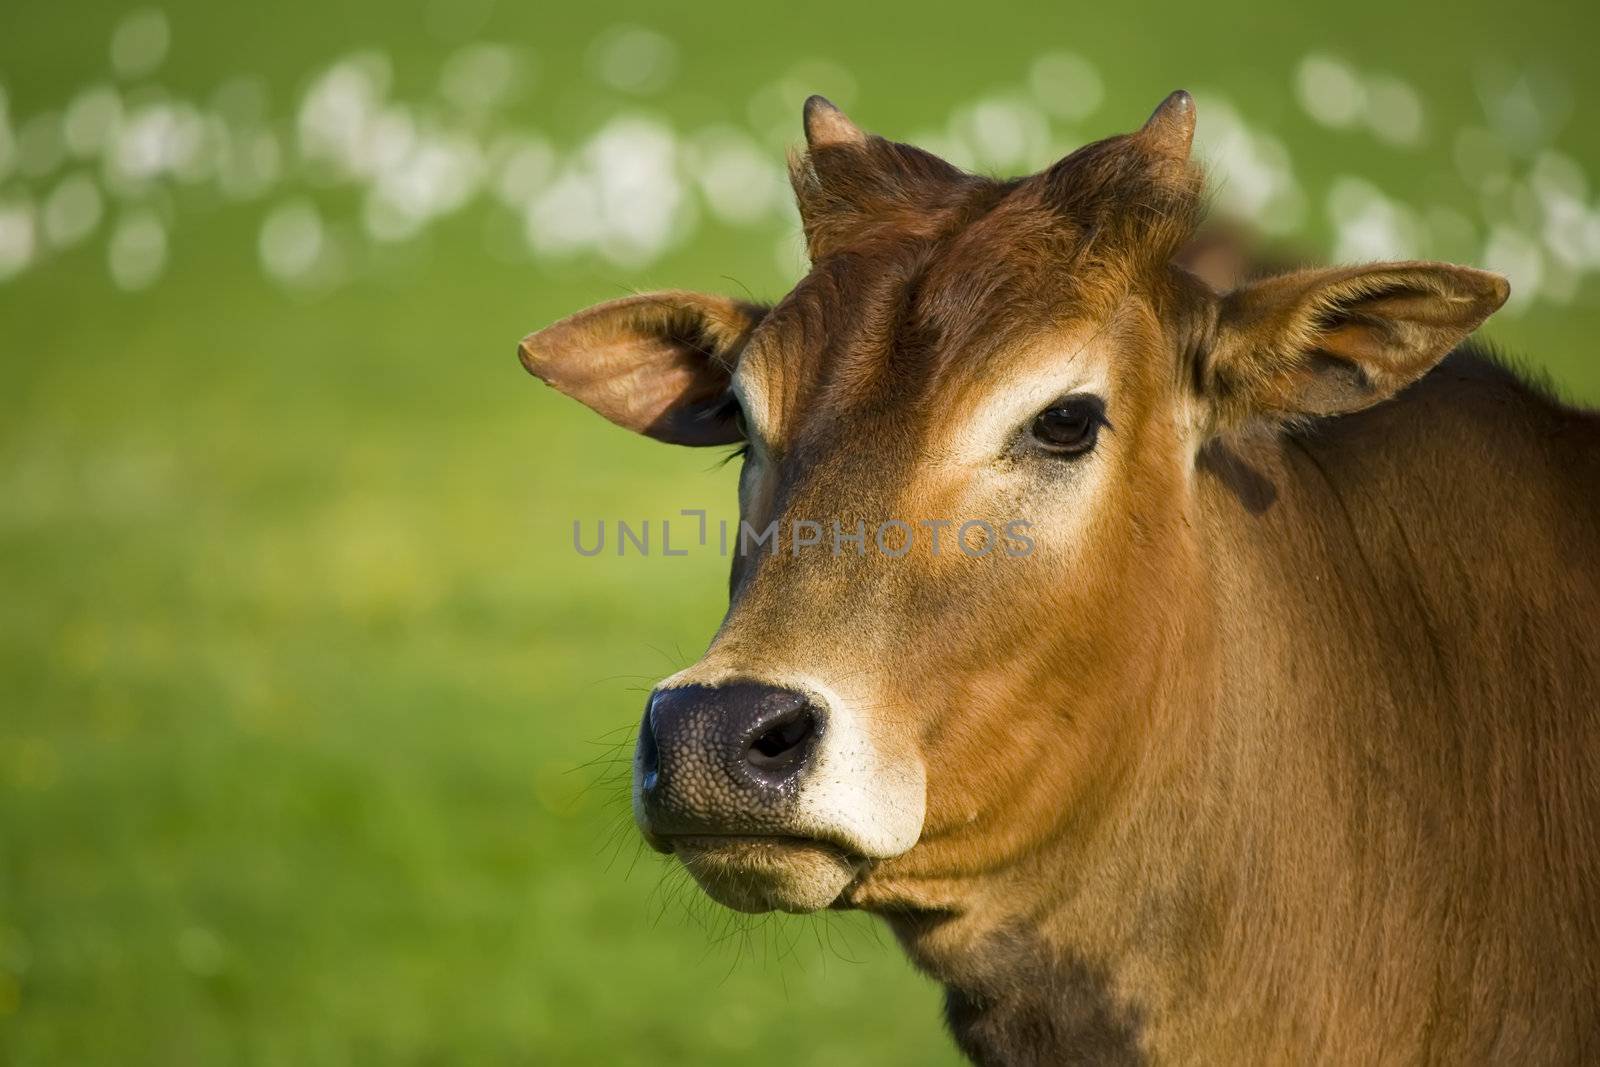 zebu cow portrait by nubephoto